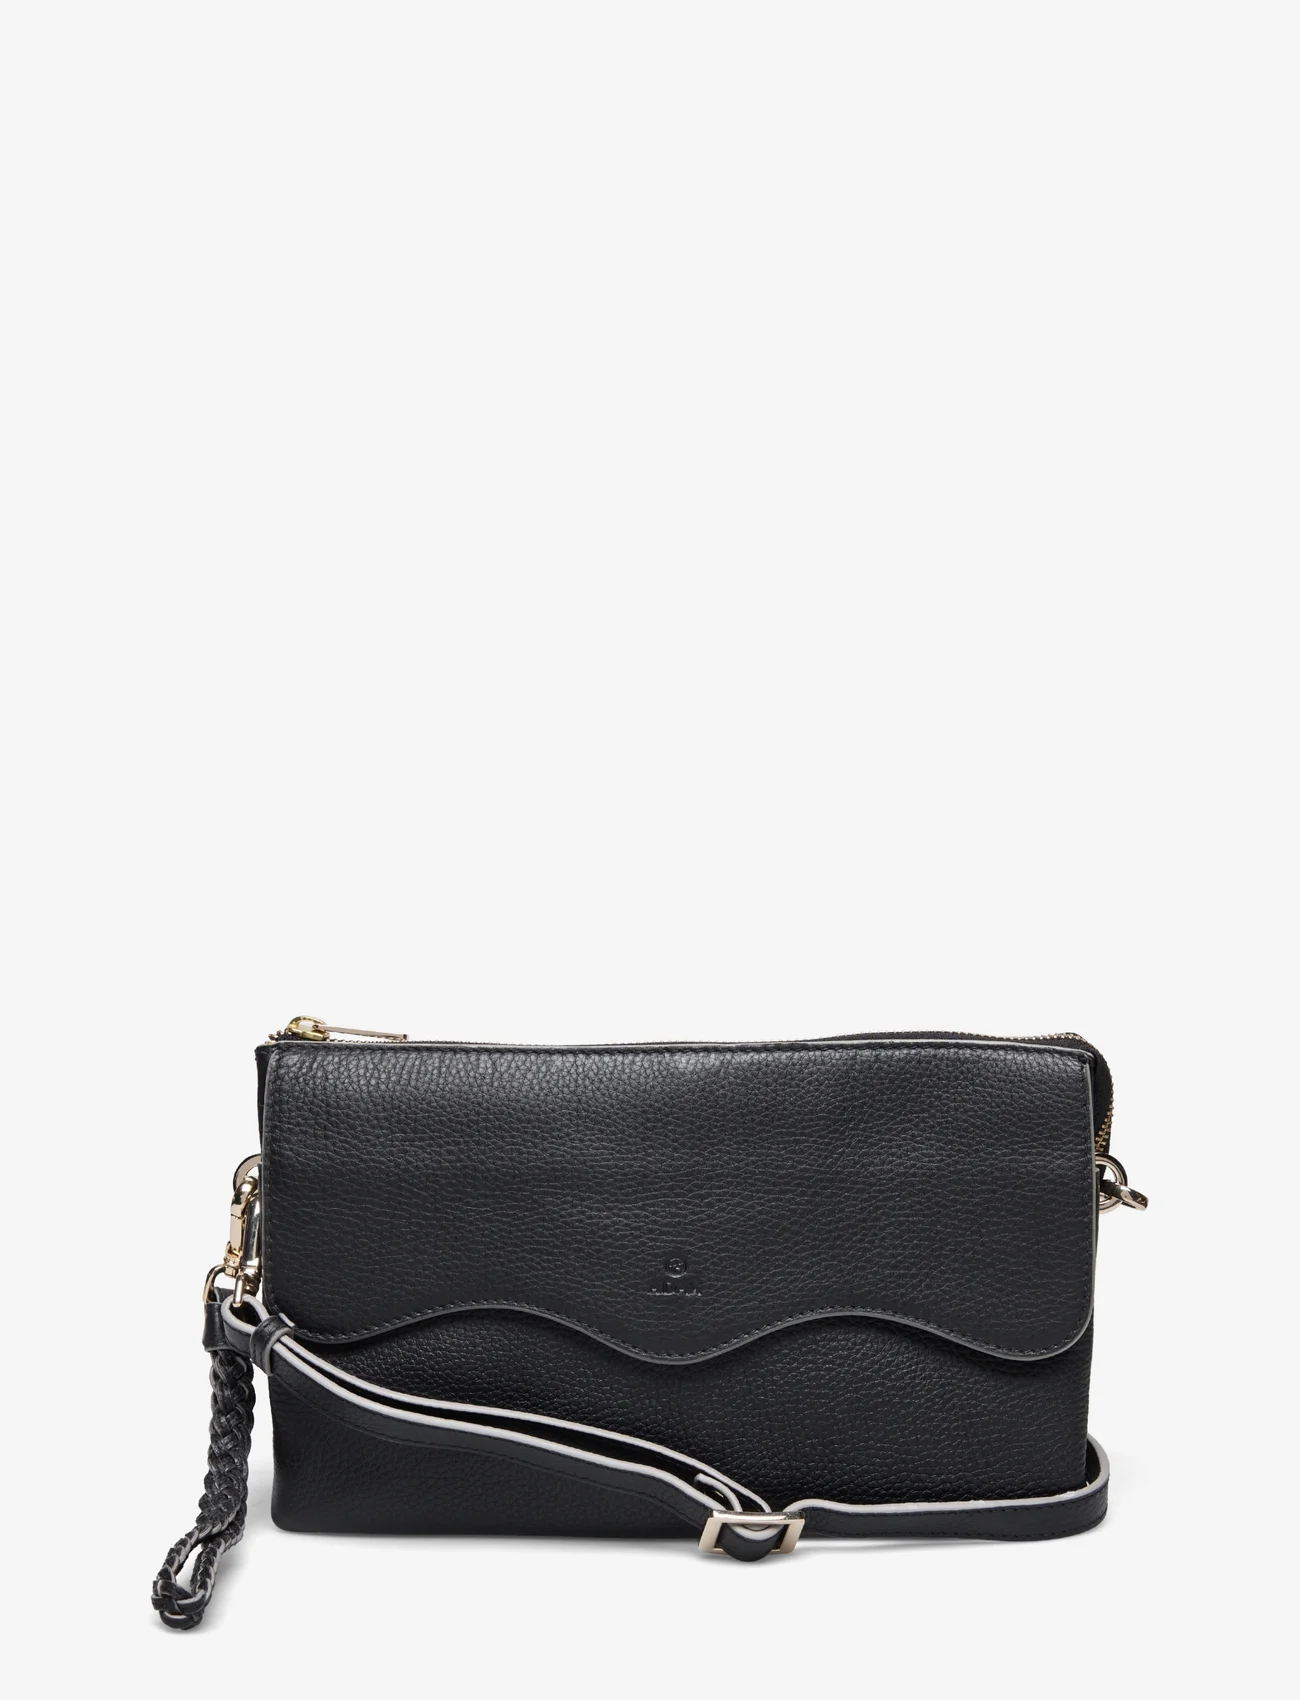 Adax - Cormorano shoulder bag Bernadett - vakarėlių drabužiai išparduotuvių kainomis - black - 0